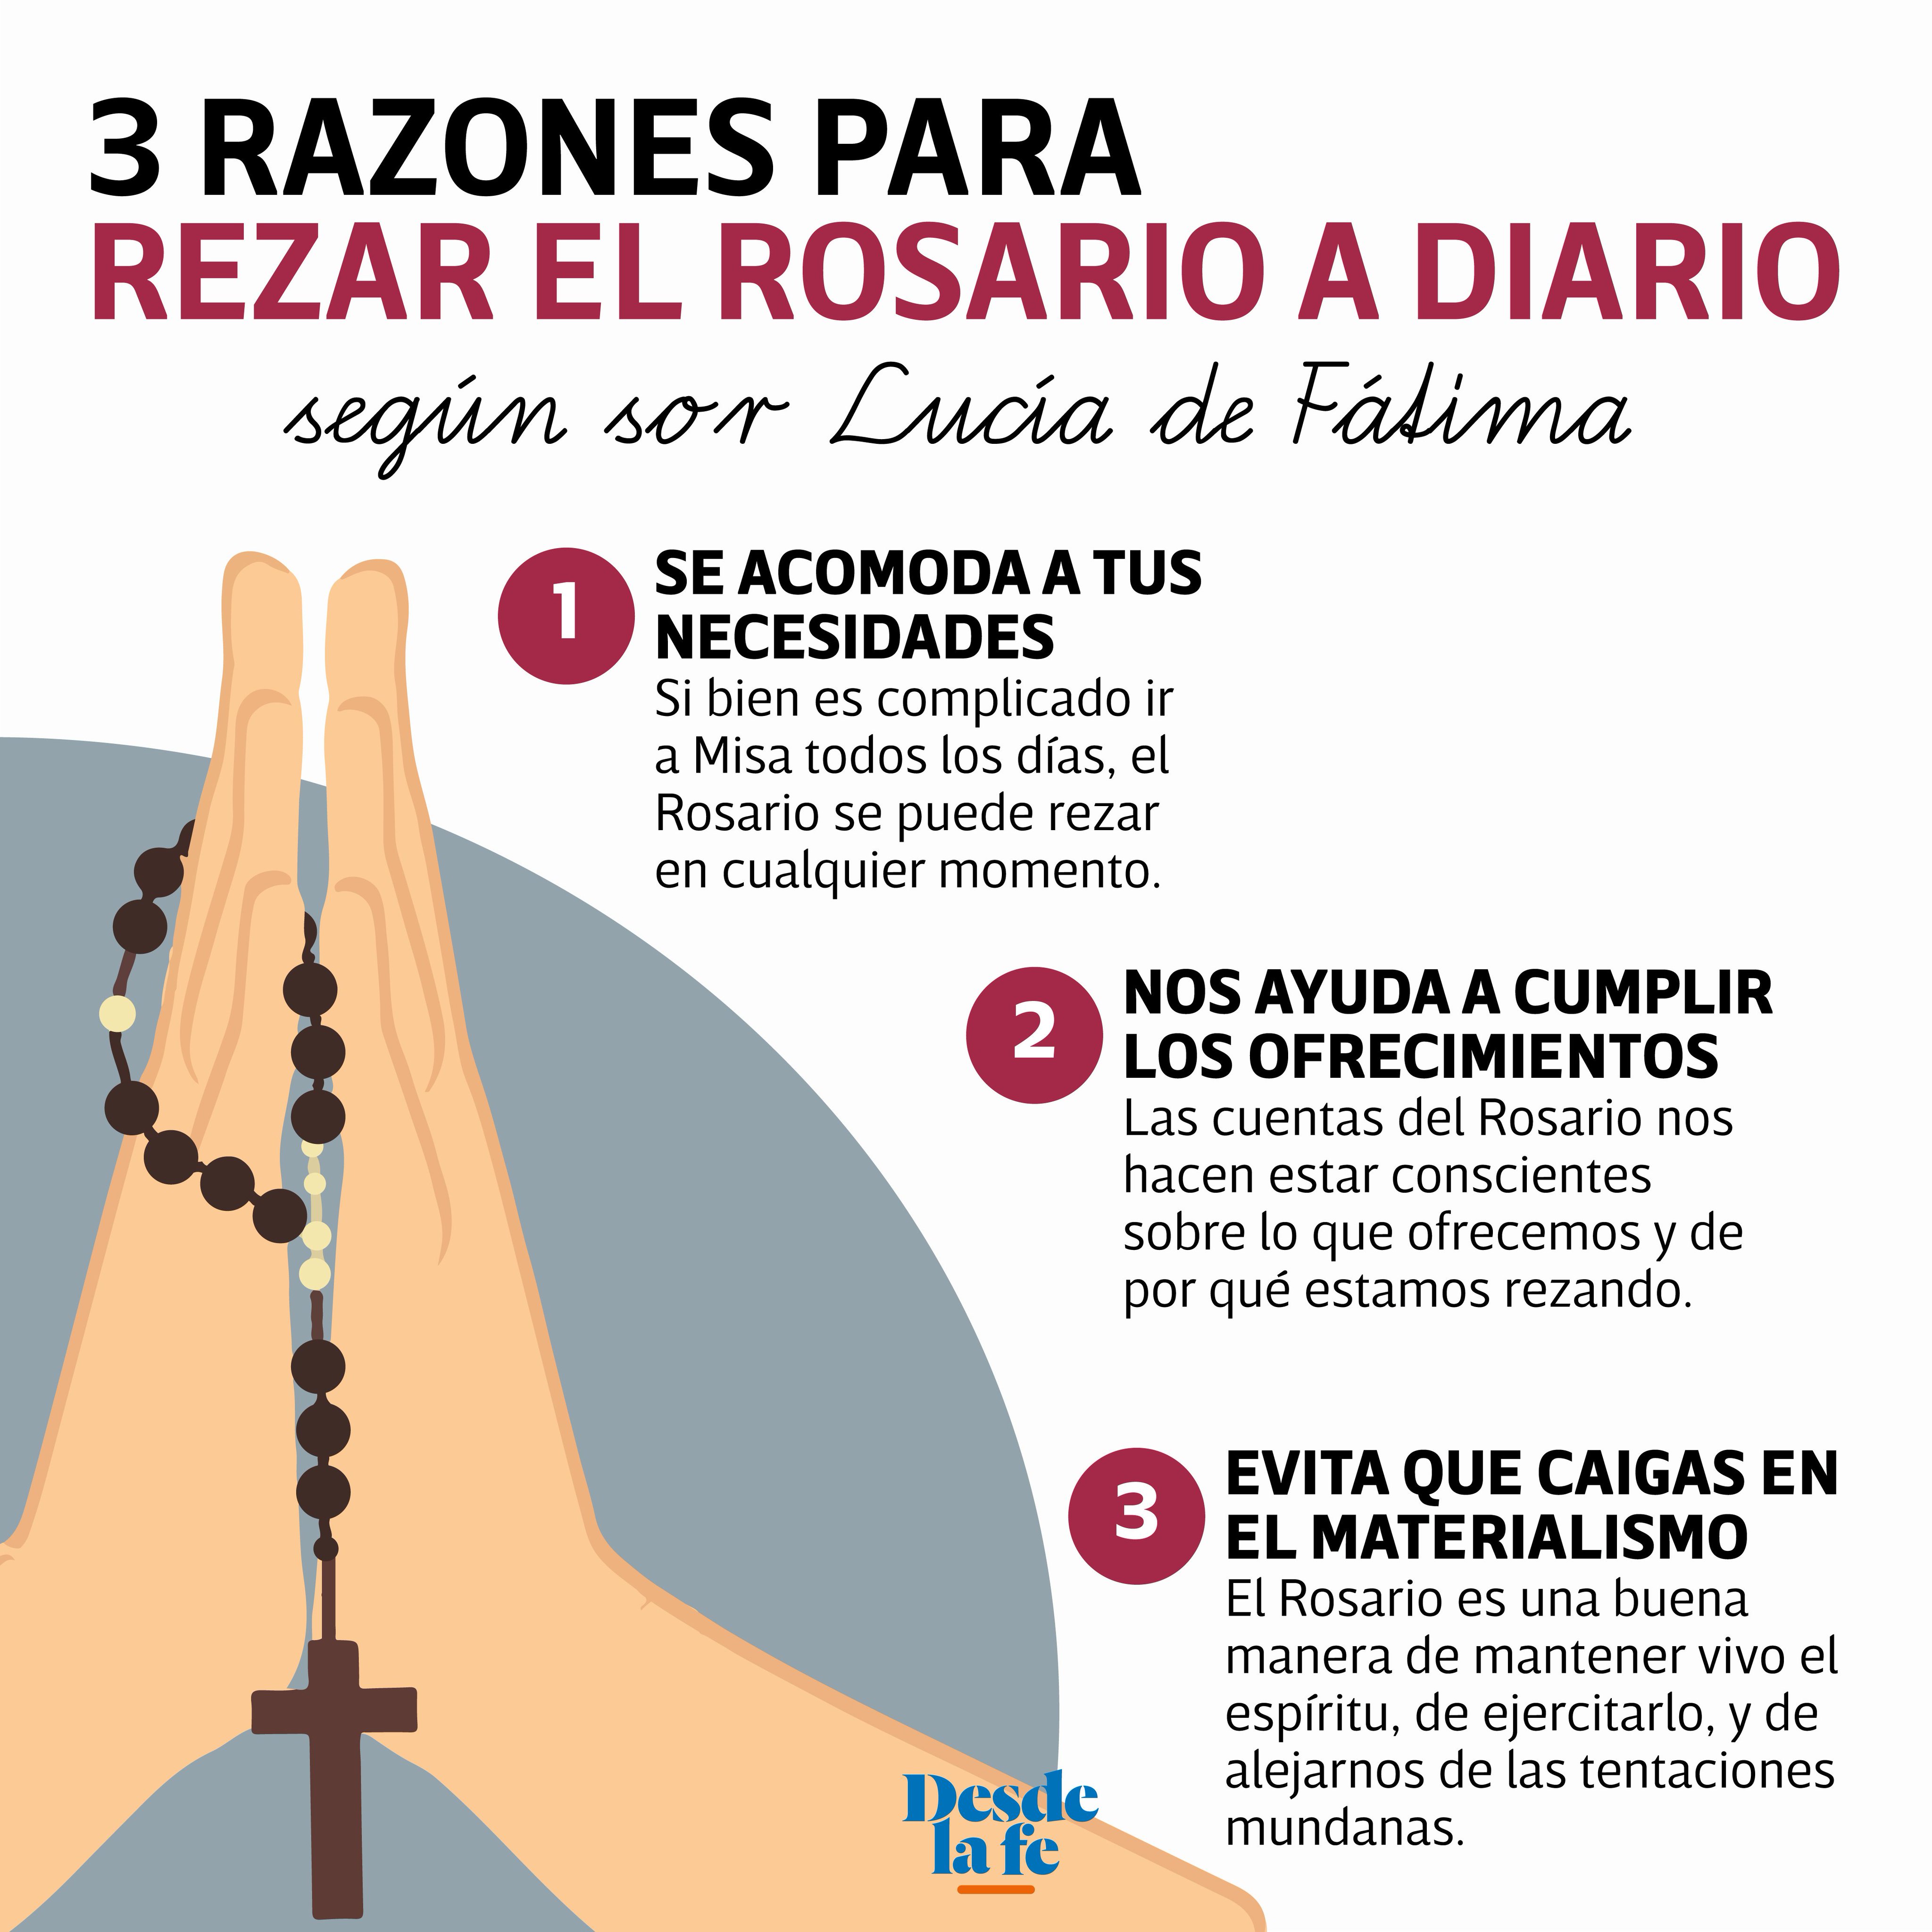 Desde la fe on Twitter: "¿Qué otra tienes para rezar el Rosario? Lee la nota completa haciendo clic en link 👉 https://t.co/Y8aTY5Ehj7 https://t.co/Ldqc0Ryidw" / Twitter